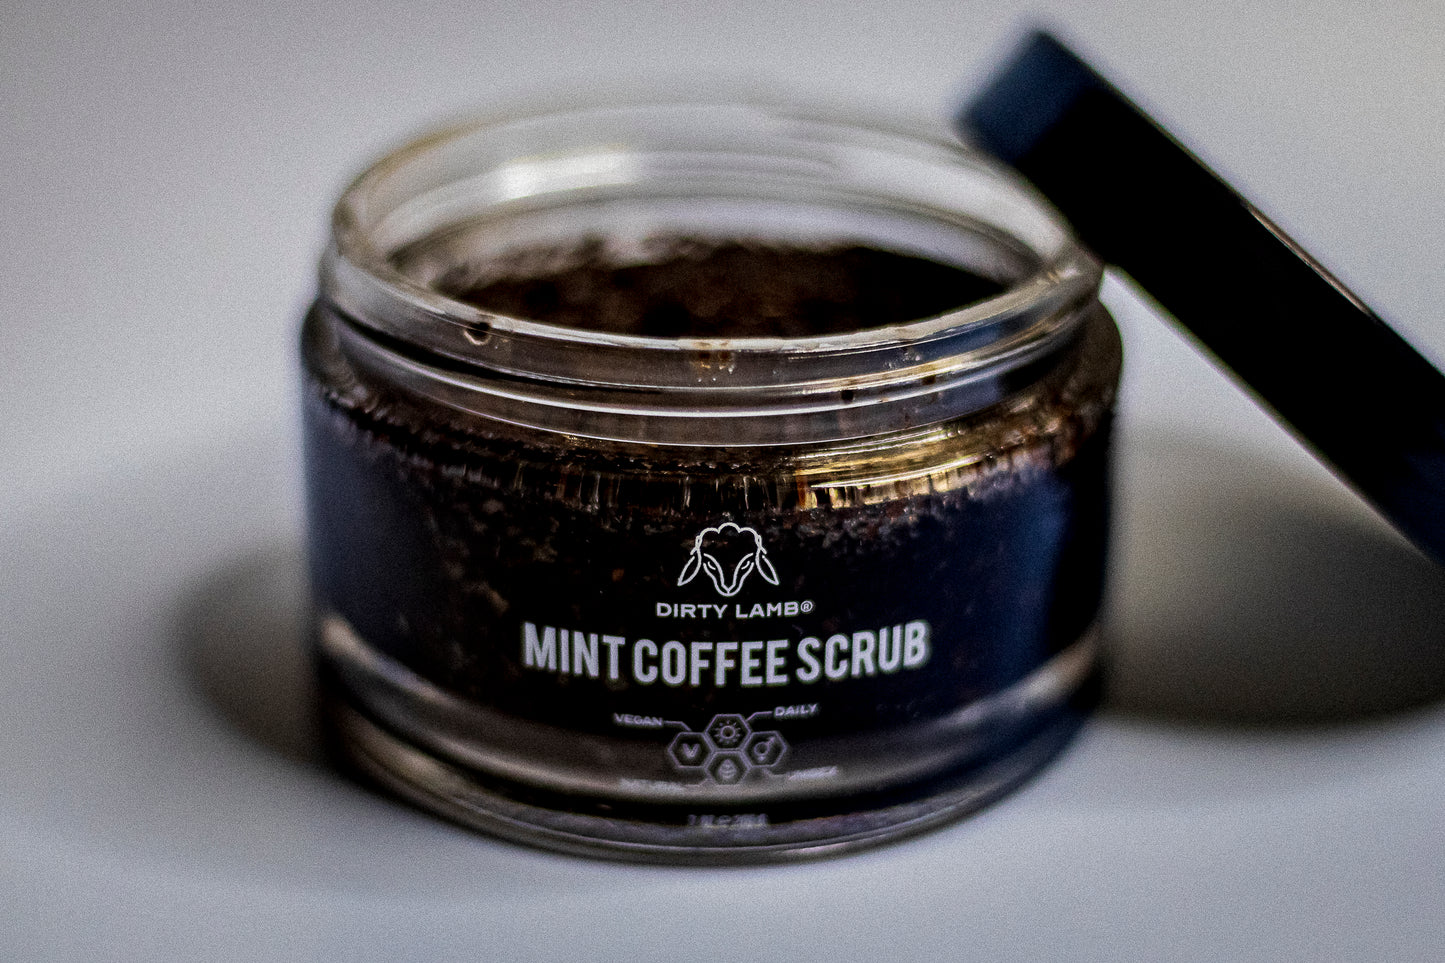 Mint Coffee Scrub